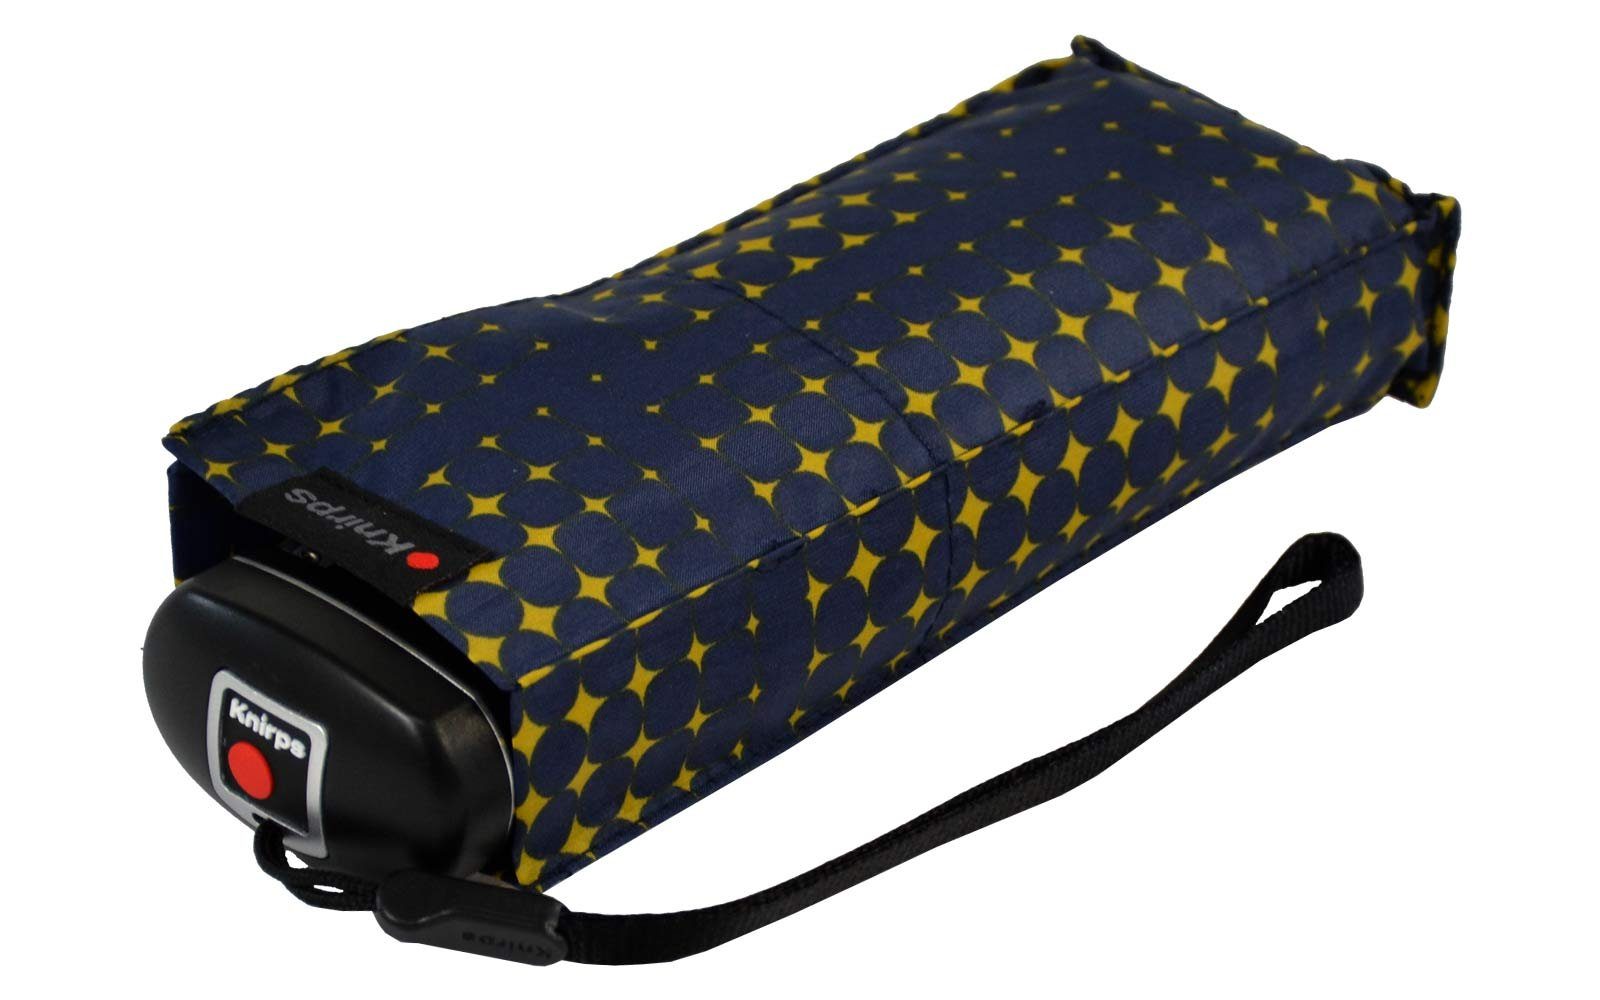 Mini-Schirm Knirps® der Travel leicht klein in navy-blau-gelb jede passt zuverlässige Tasche Taschenregenschirm der Begleiter, kompakt - stars,